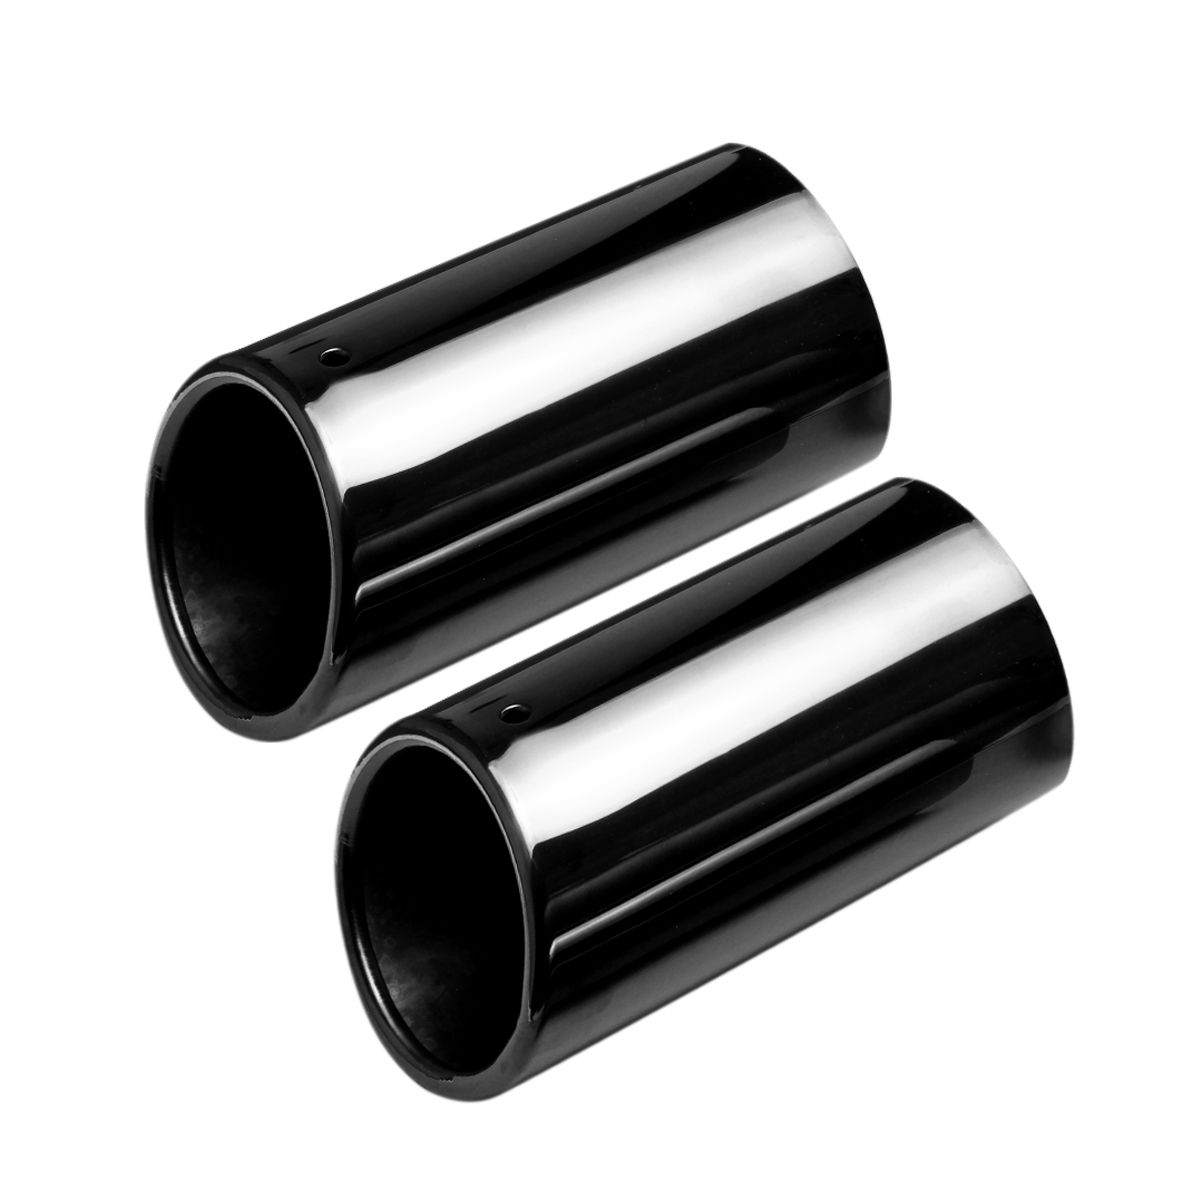 2Pc-Titanium-Black-Exhaust-Muffler-Tail-Pipe-Tip-For-BMW-E90-E92-325i-328i-06-10-1460990